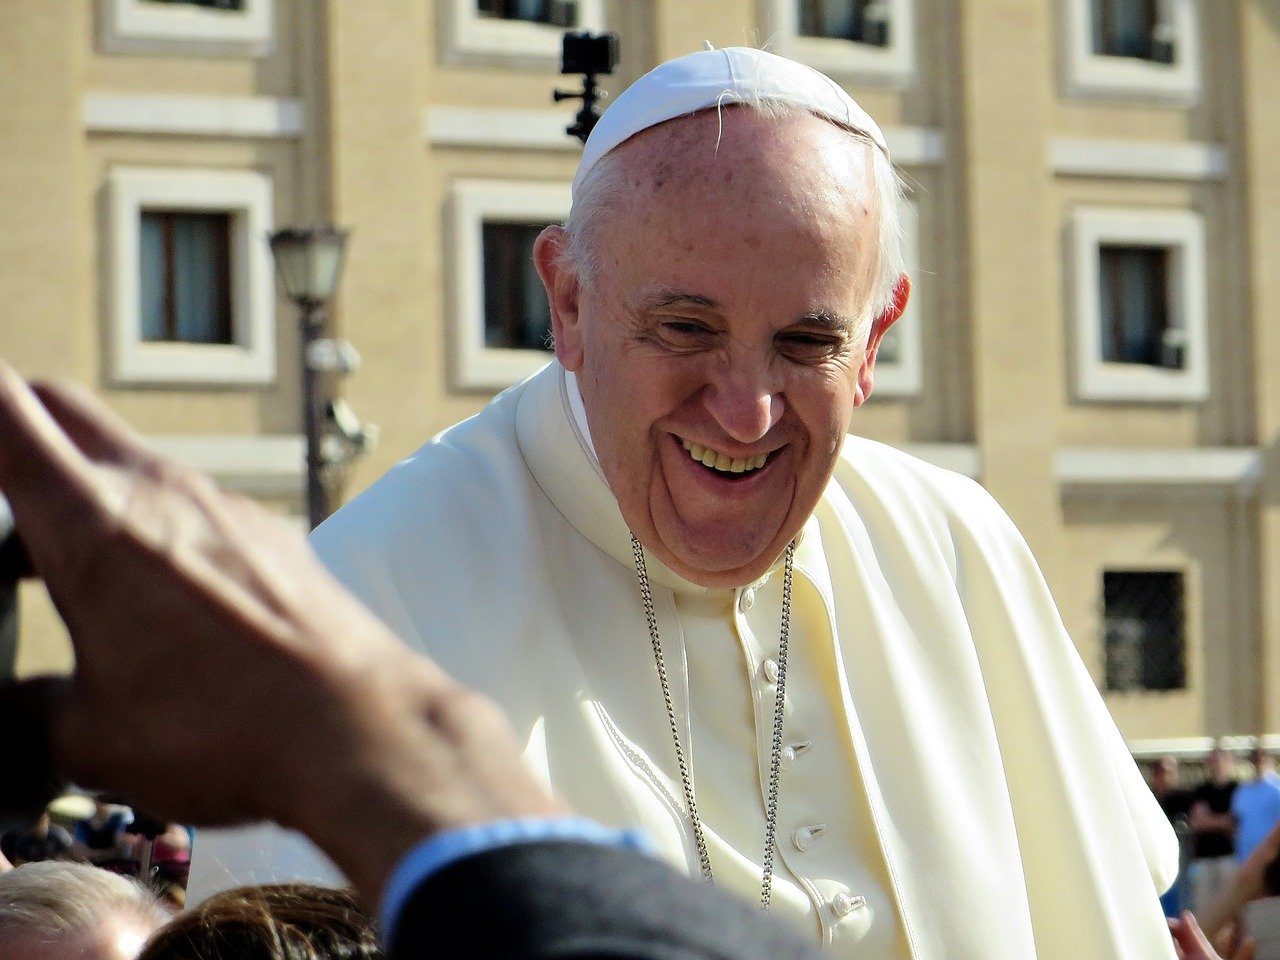 Le pape François sourit devant l'objectif d'un journaliste. il est vêtu de blanc. On voit son buste, au-dessus de la main du photographe qui est hors champs.